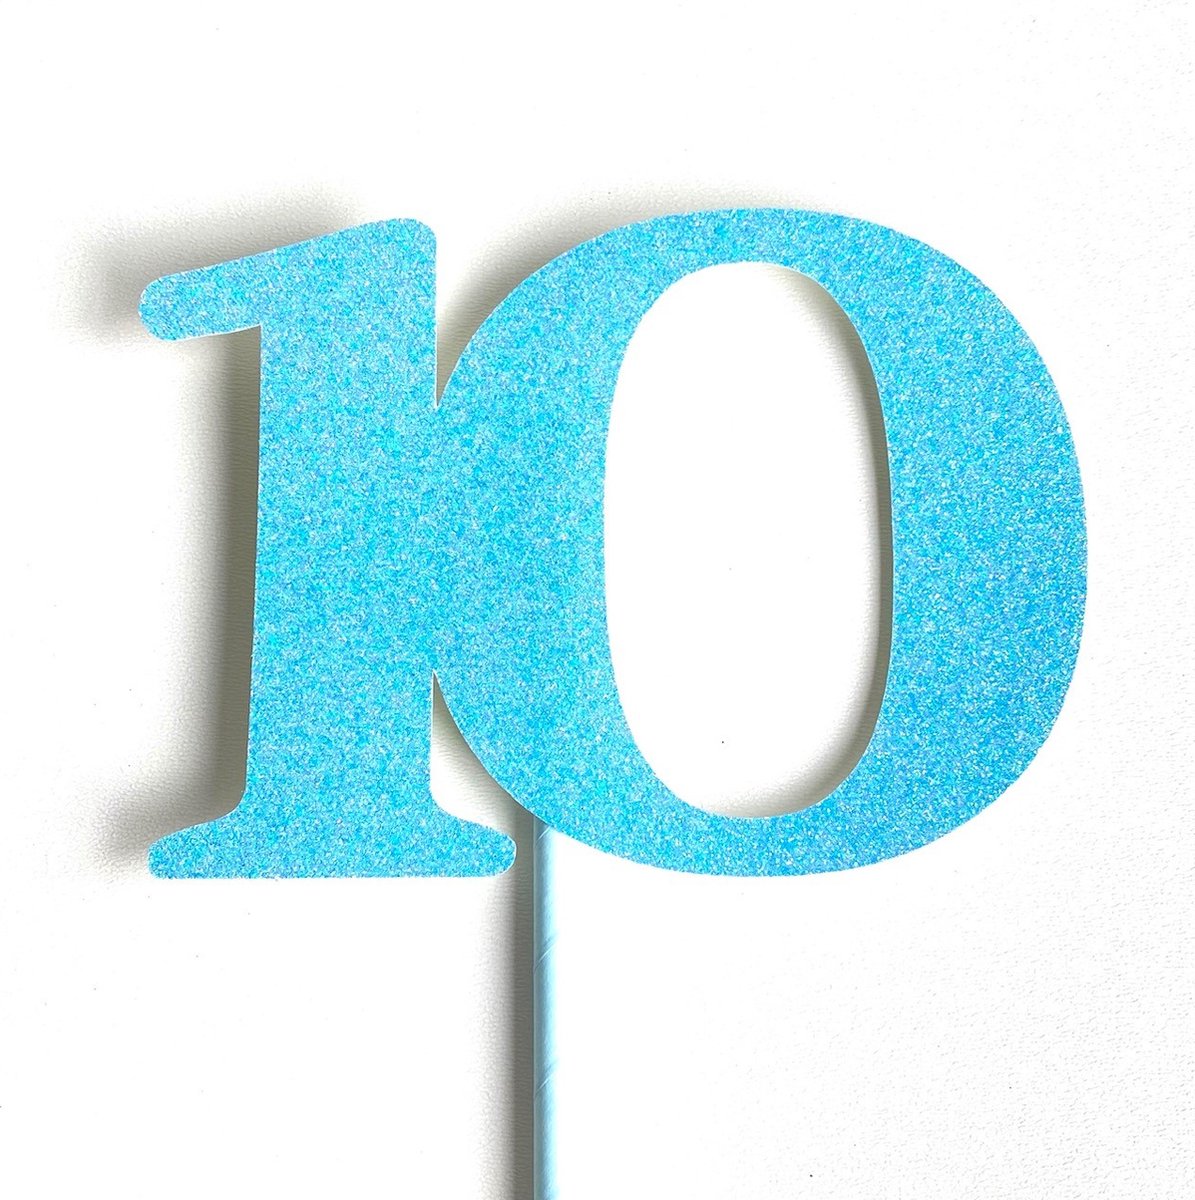 Taartdecoratie versiering| Taarttopper| Cake topper | Taartversiering| Verjaardag| Cijfers | 10 | Blauw glitter|14 cm| karton